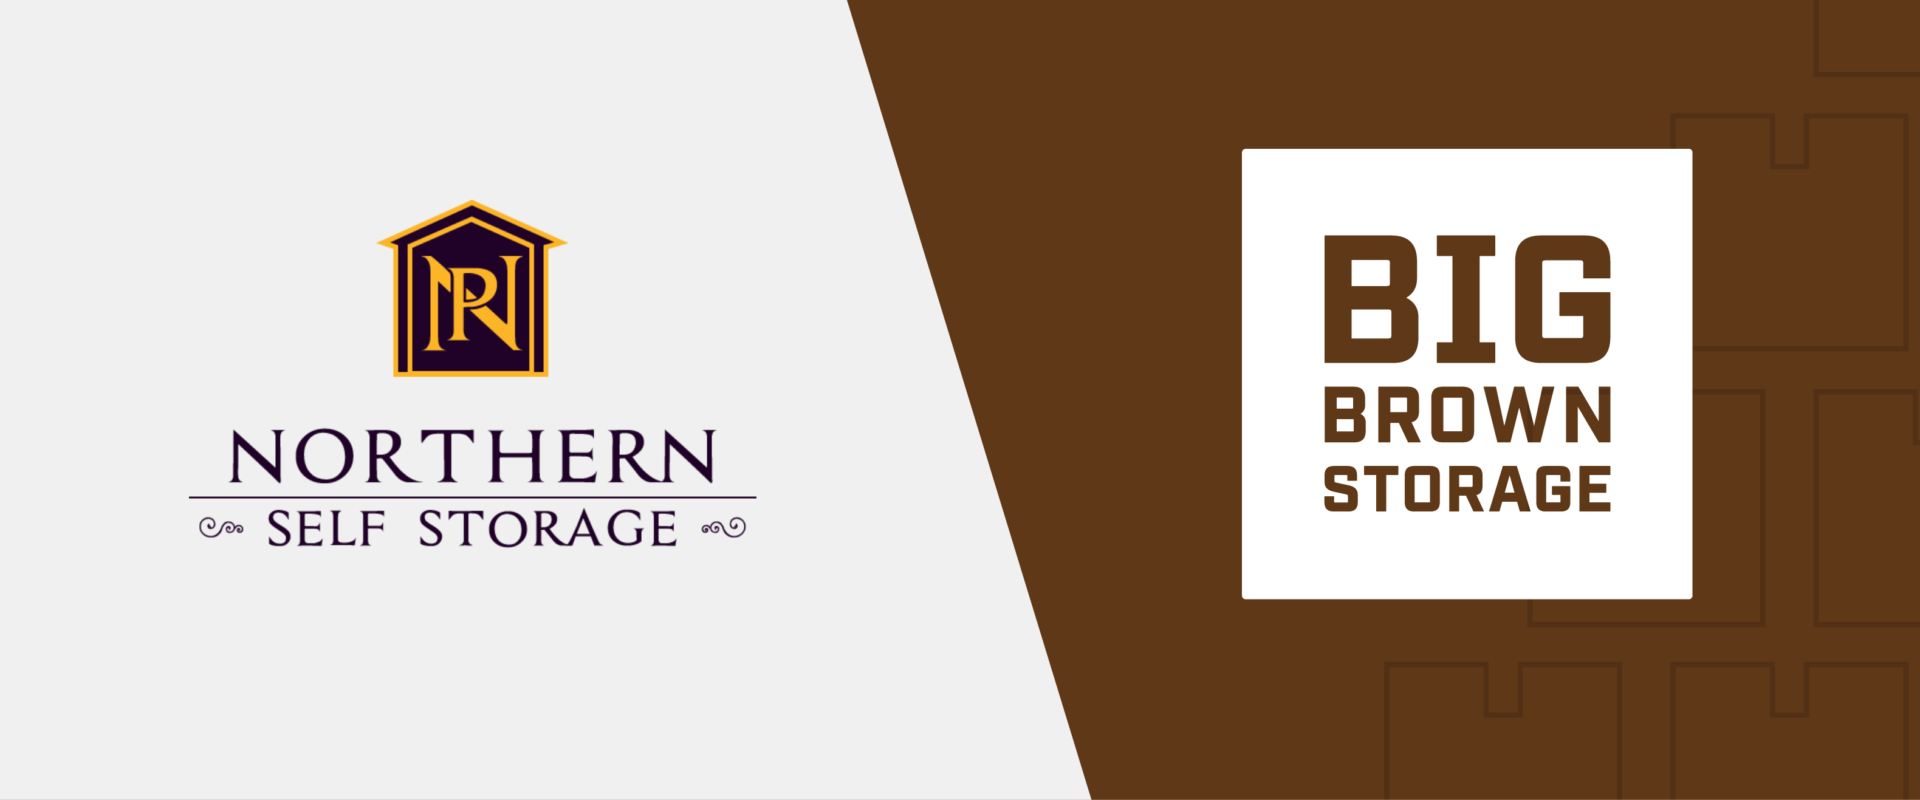 Big Brown Storage logos